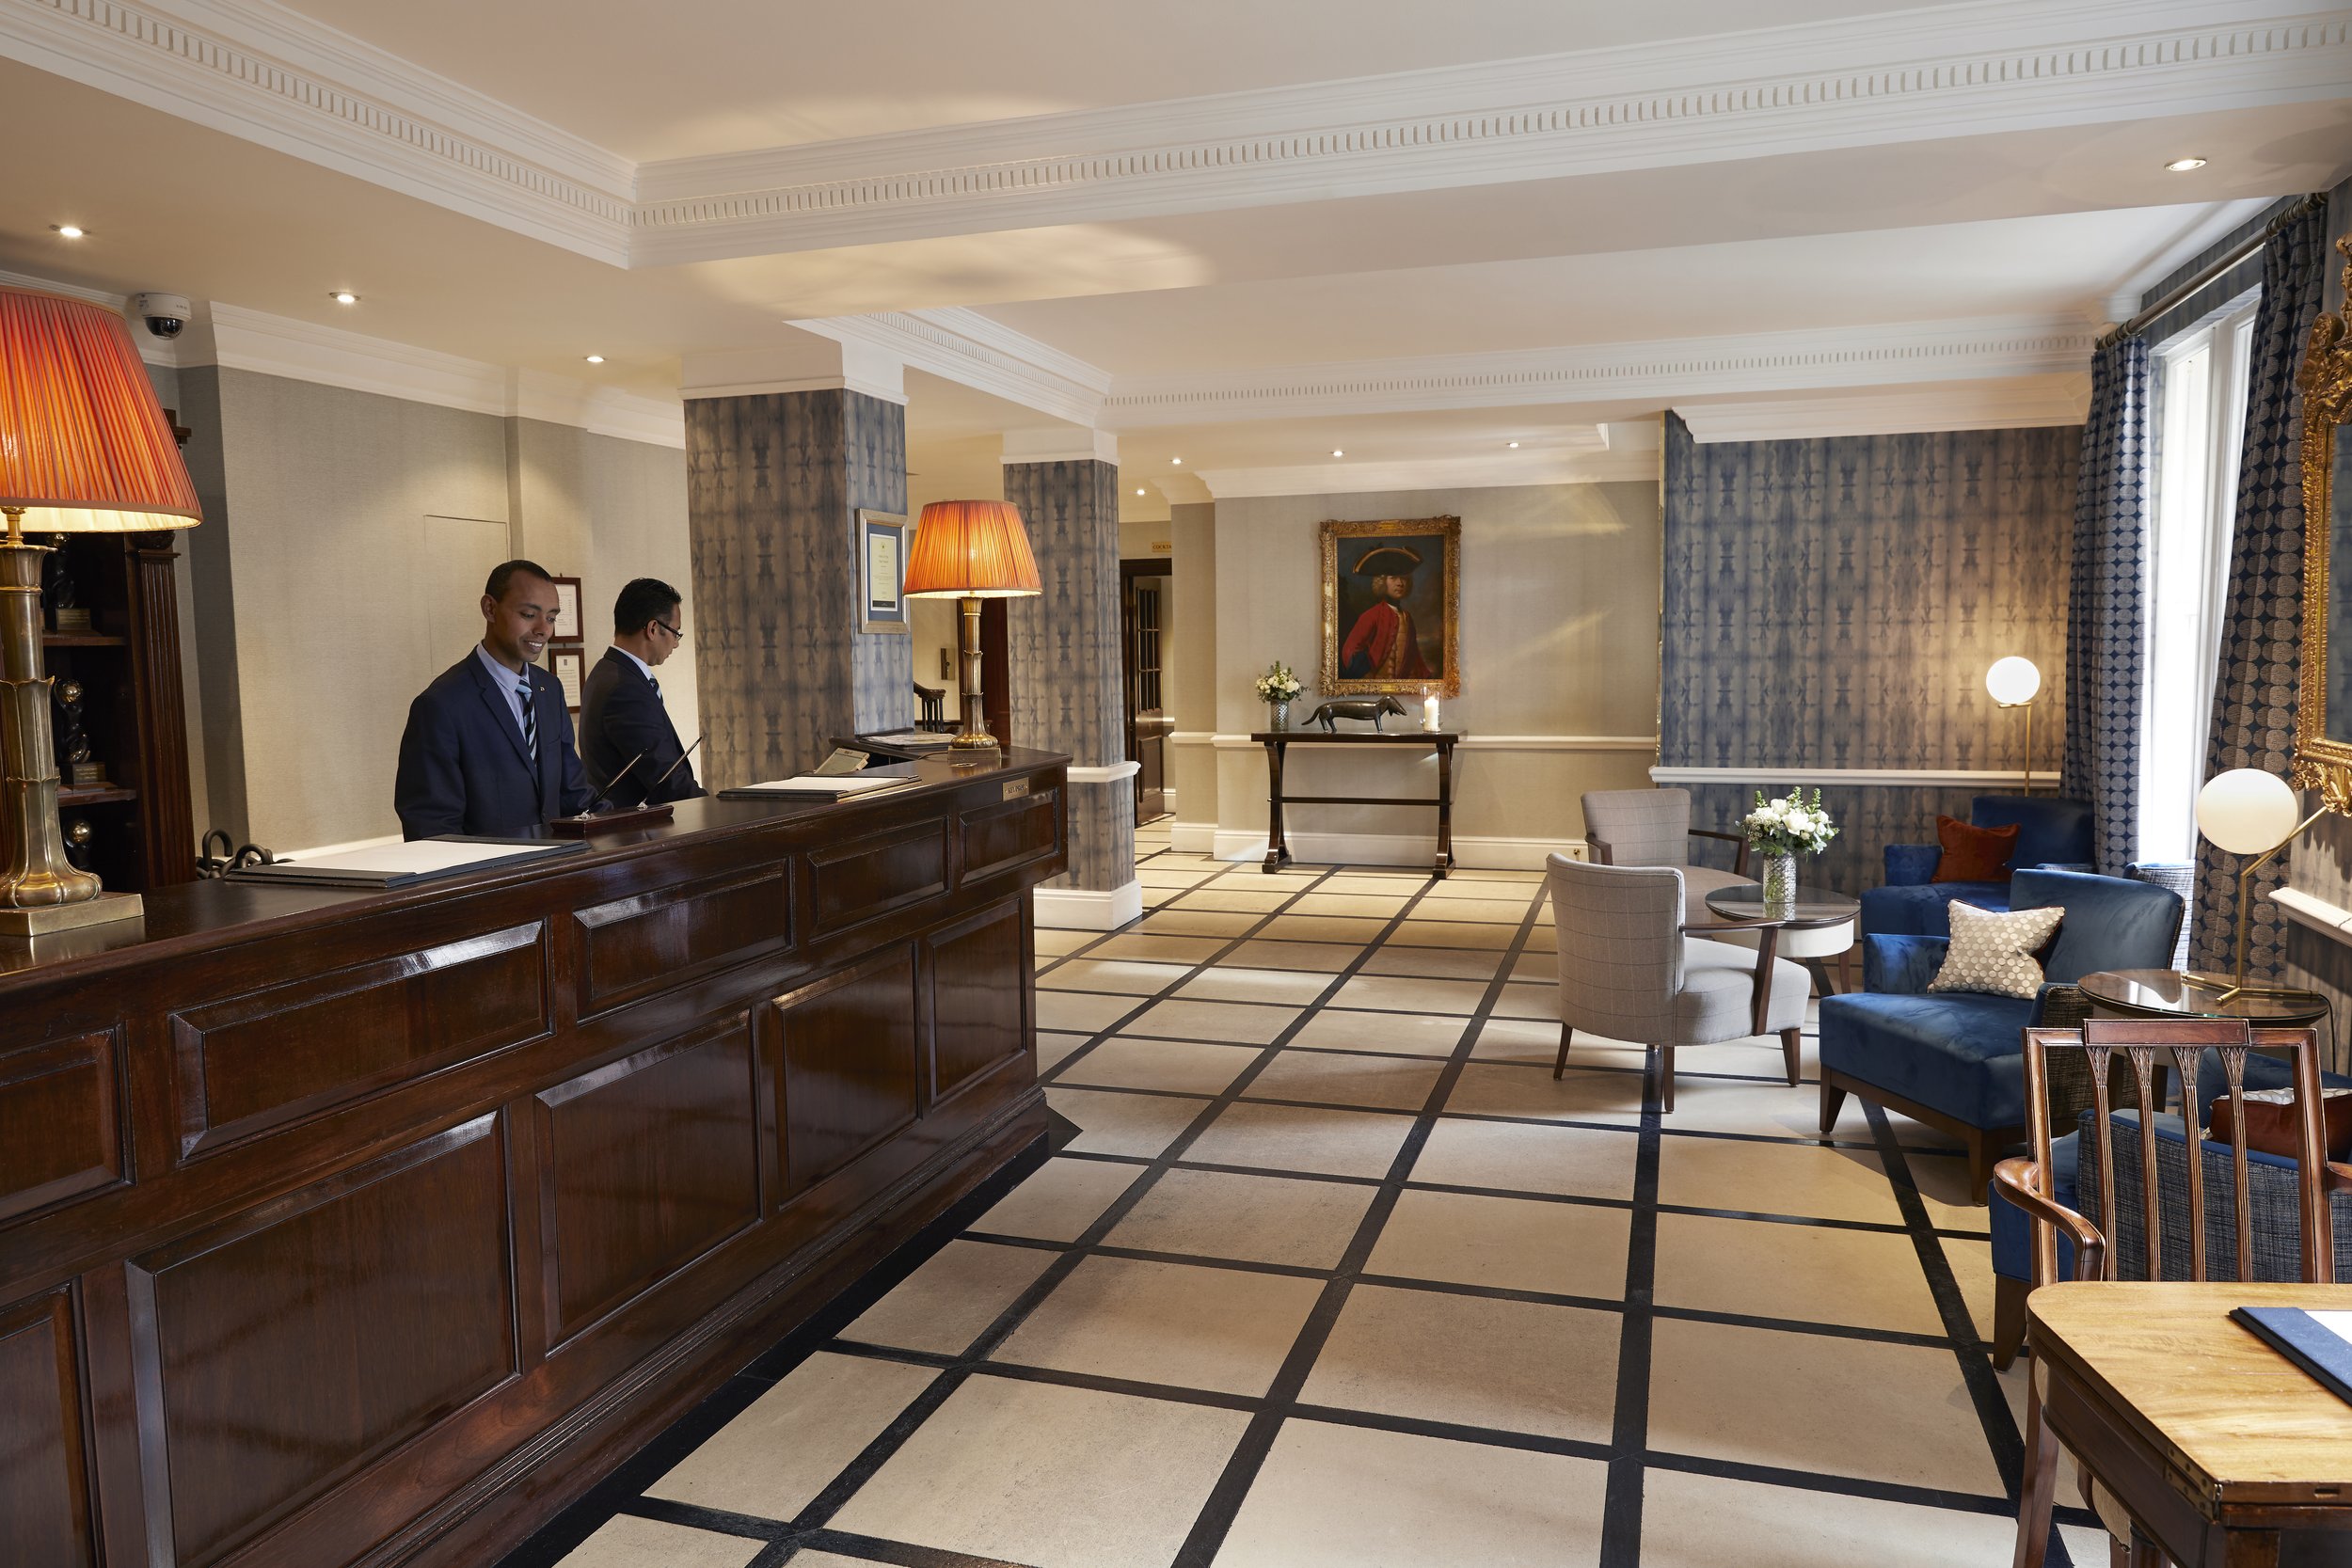 Hotel body. Dukes London, Англия. Отель в Лондоне. Классическая гостиница Англии. Gold England отель.